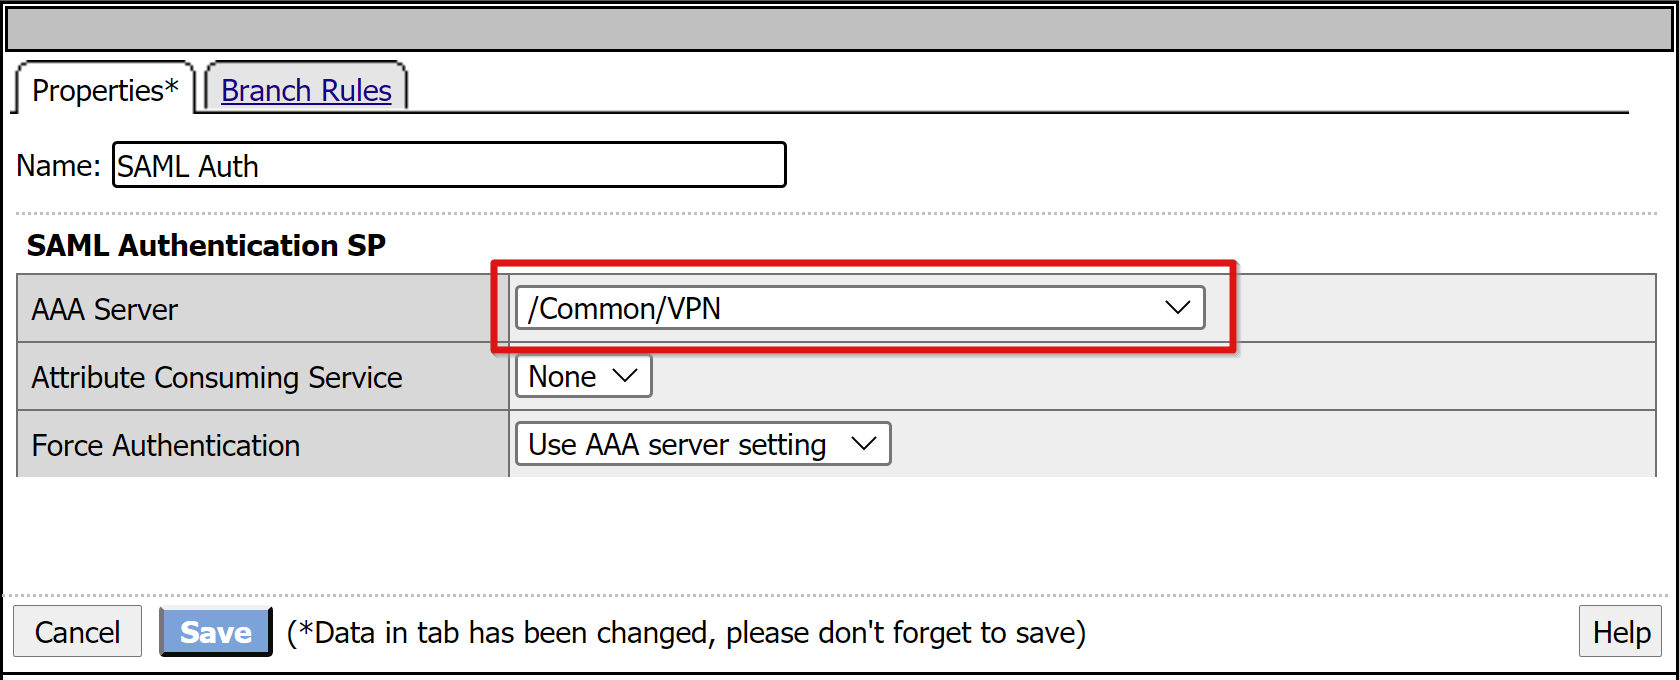 Schermopname van de AAA-serververmelding onder SAML Authentication SP op het tabblad Eigenschappen.